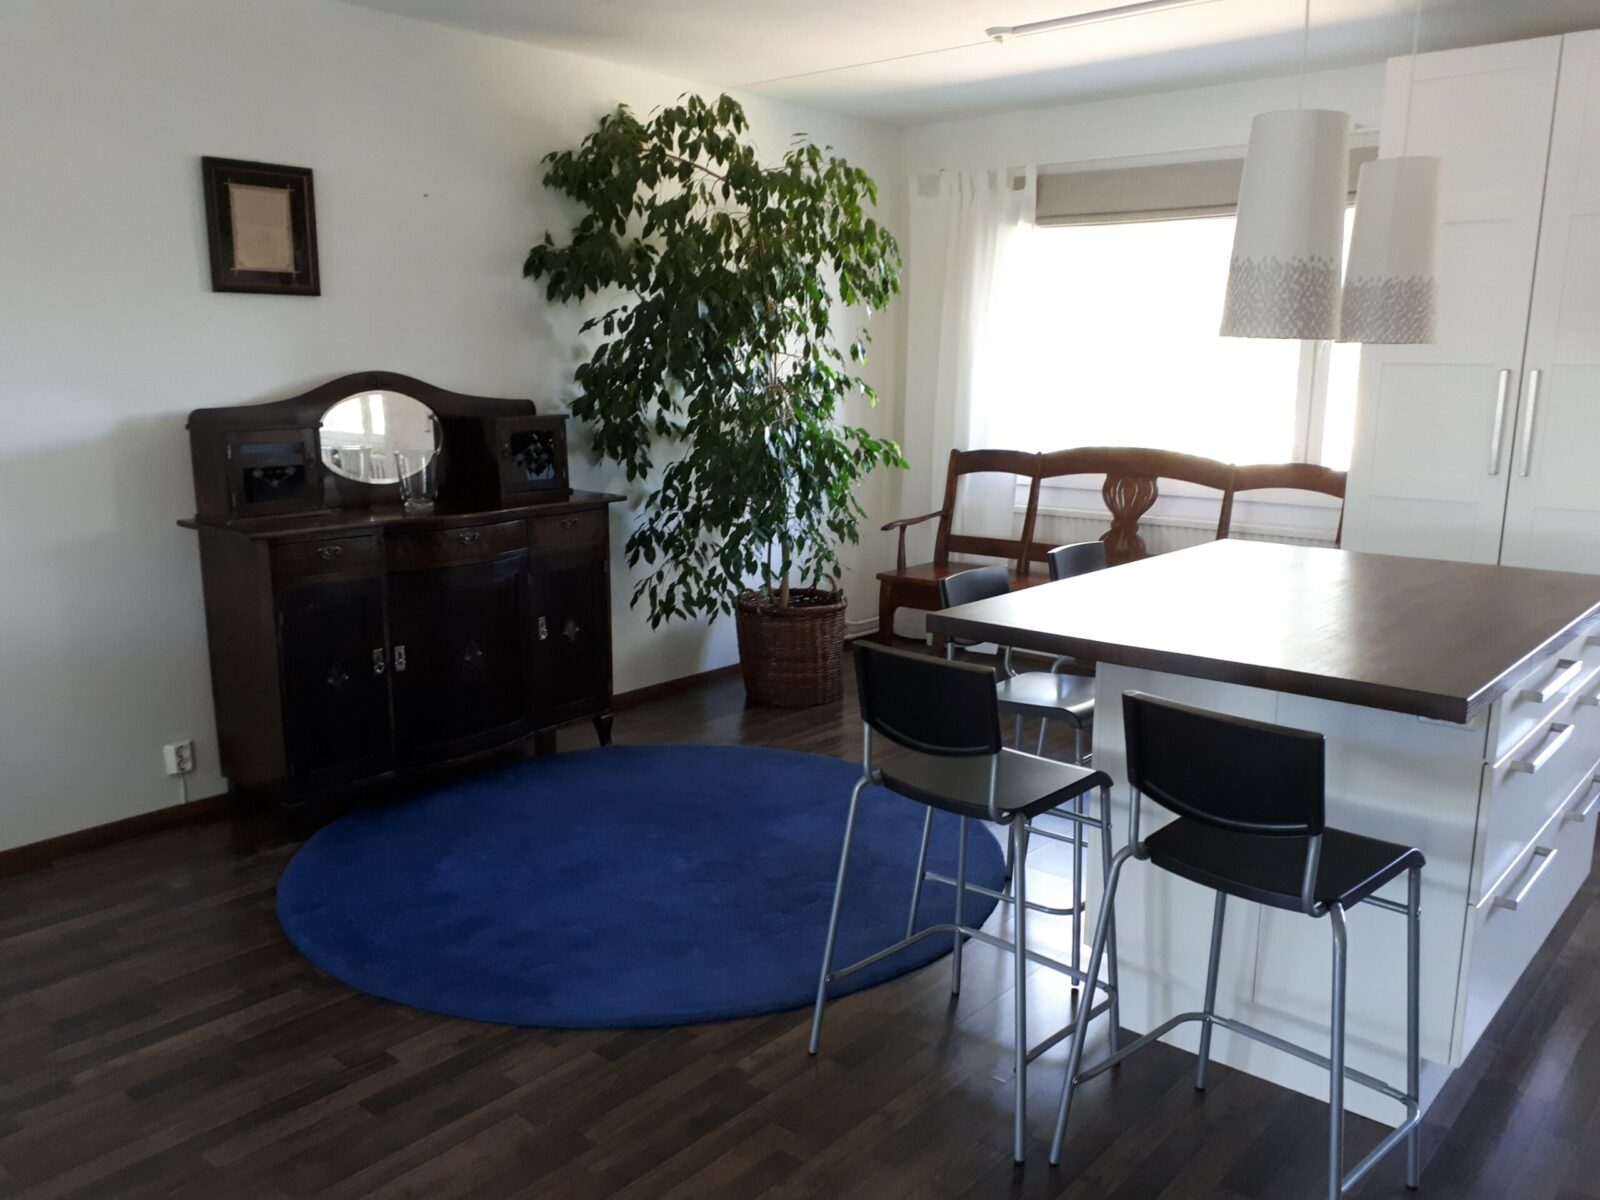 Olohuone, jossa pyöreä sinin matto, pöytä ja kaksi tuolia sekä huonekasvi